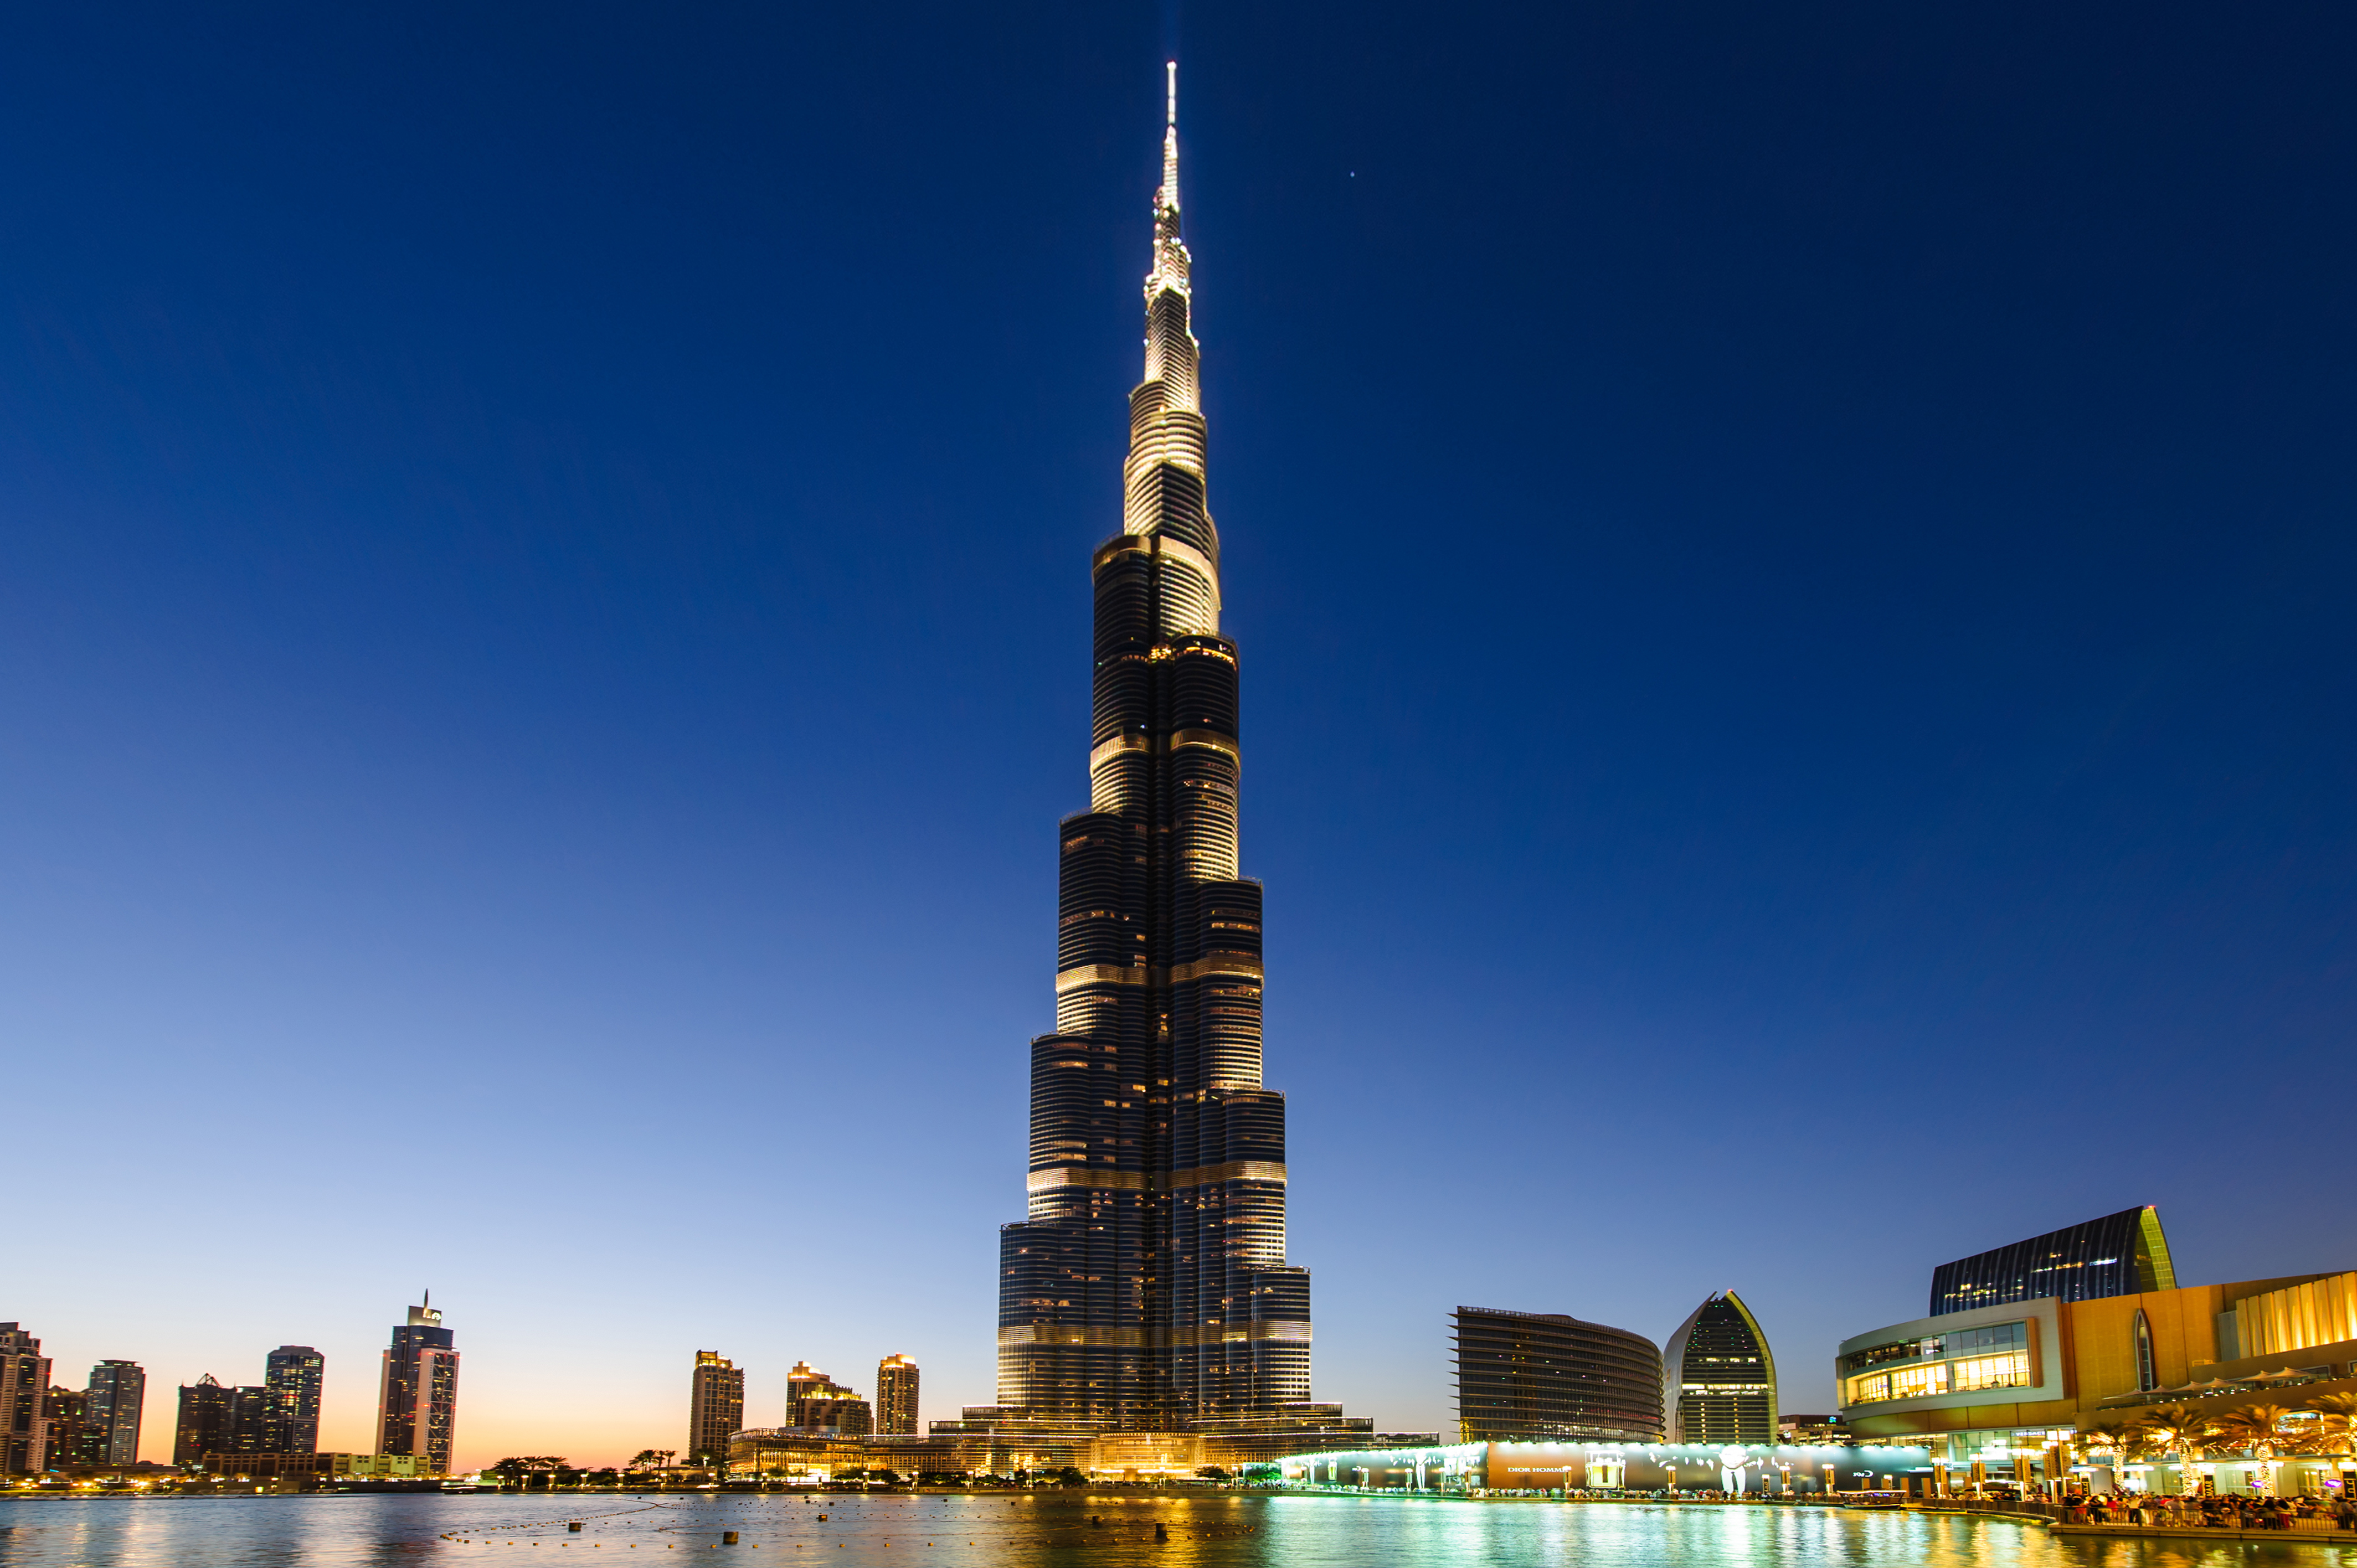 Comment COVID-19 a influencé sur le choix de l'immobilier à Dubaï